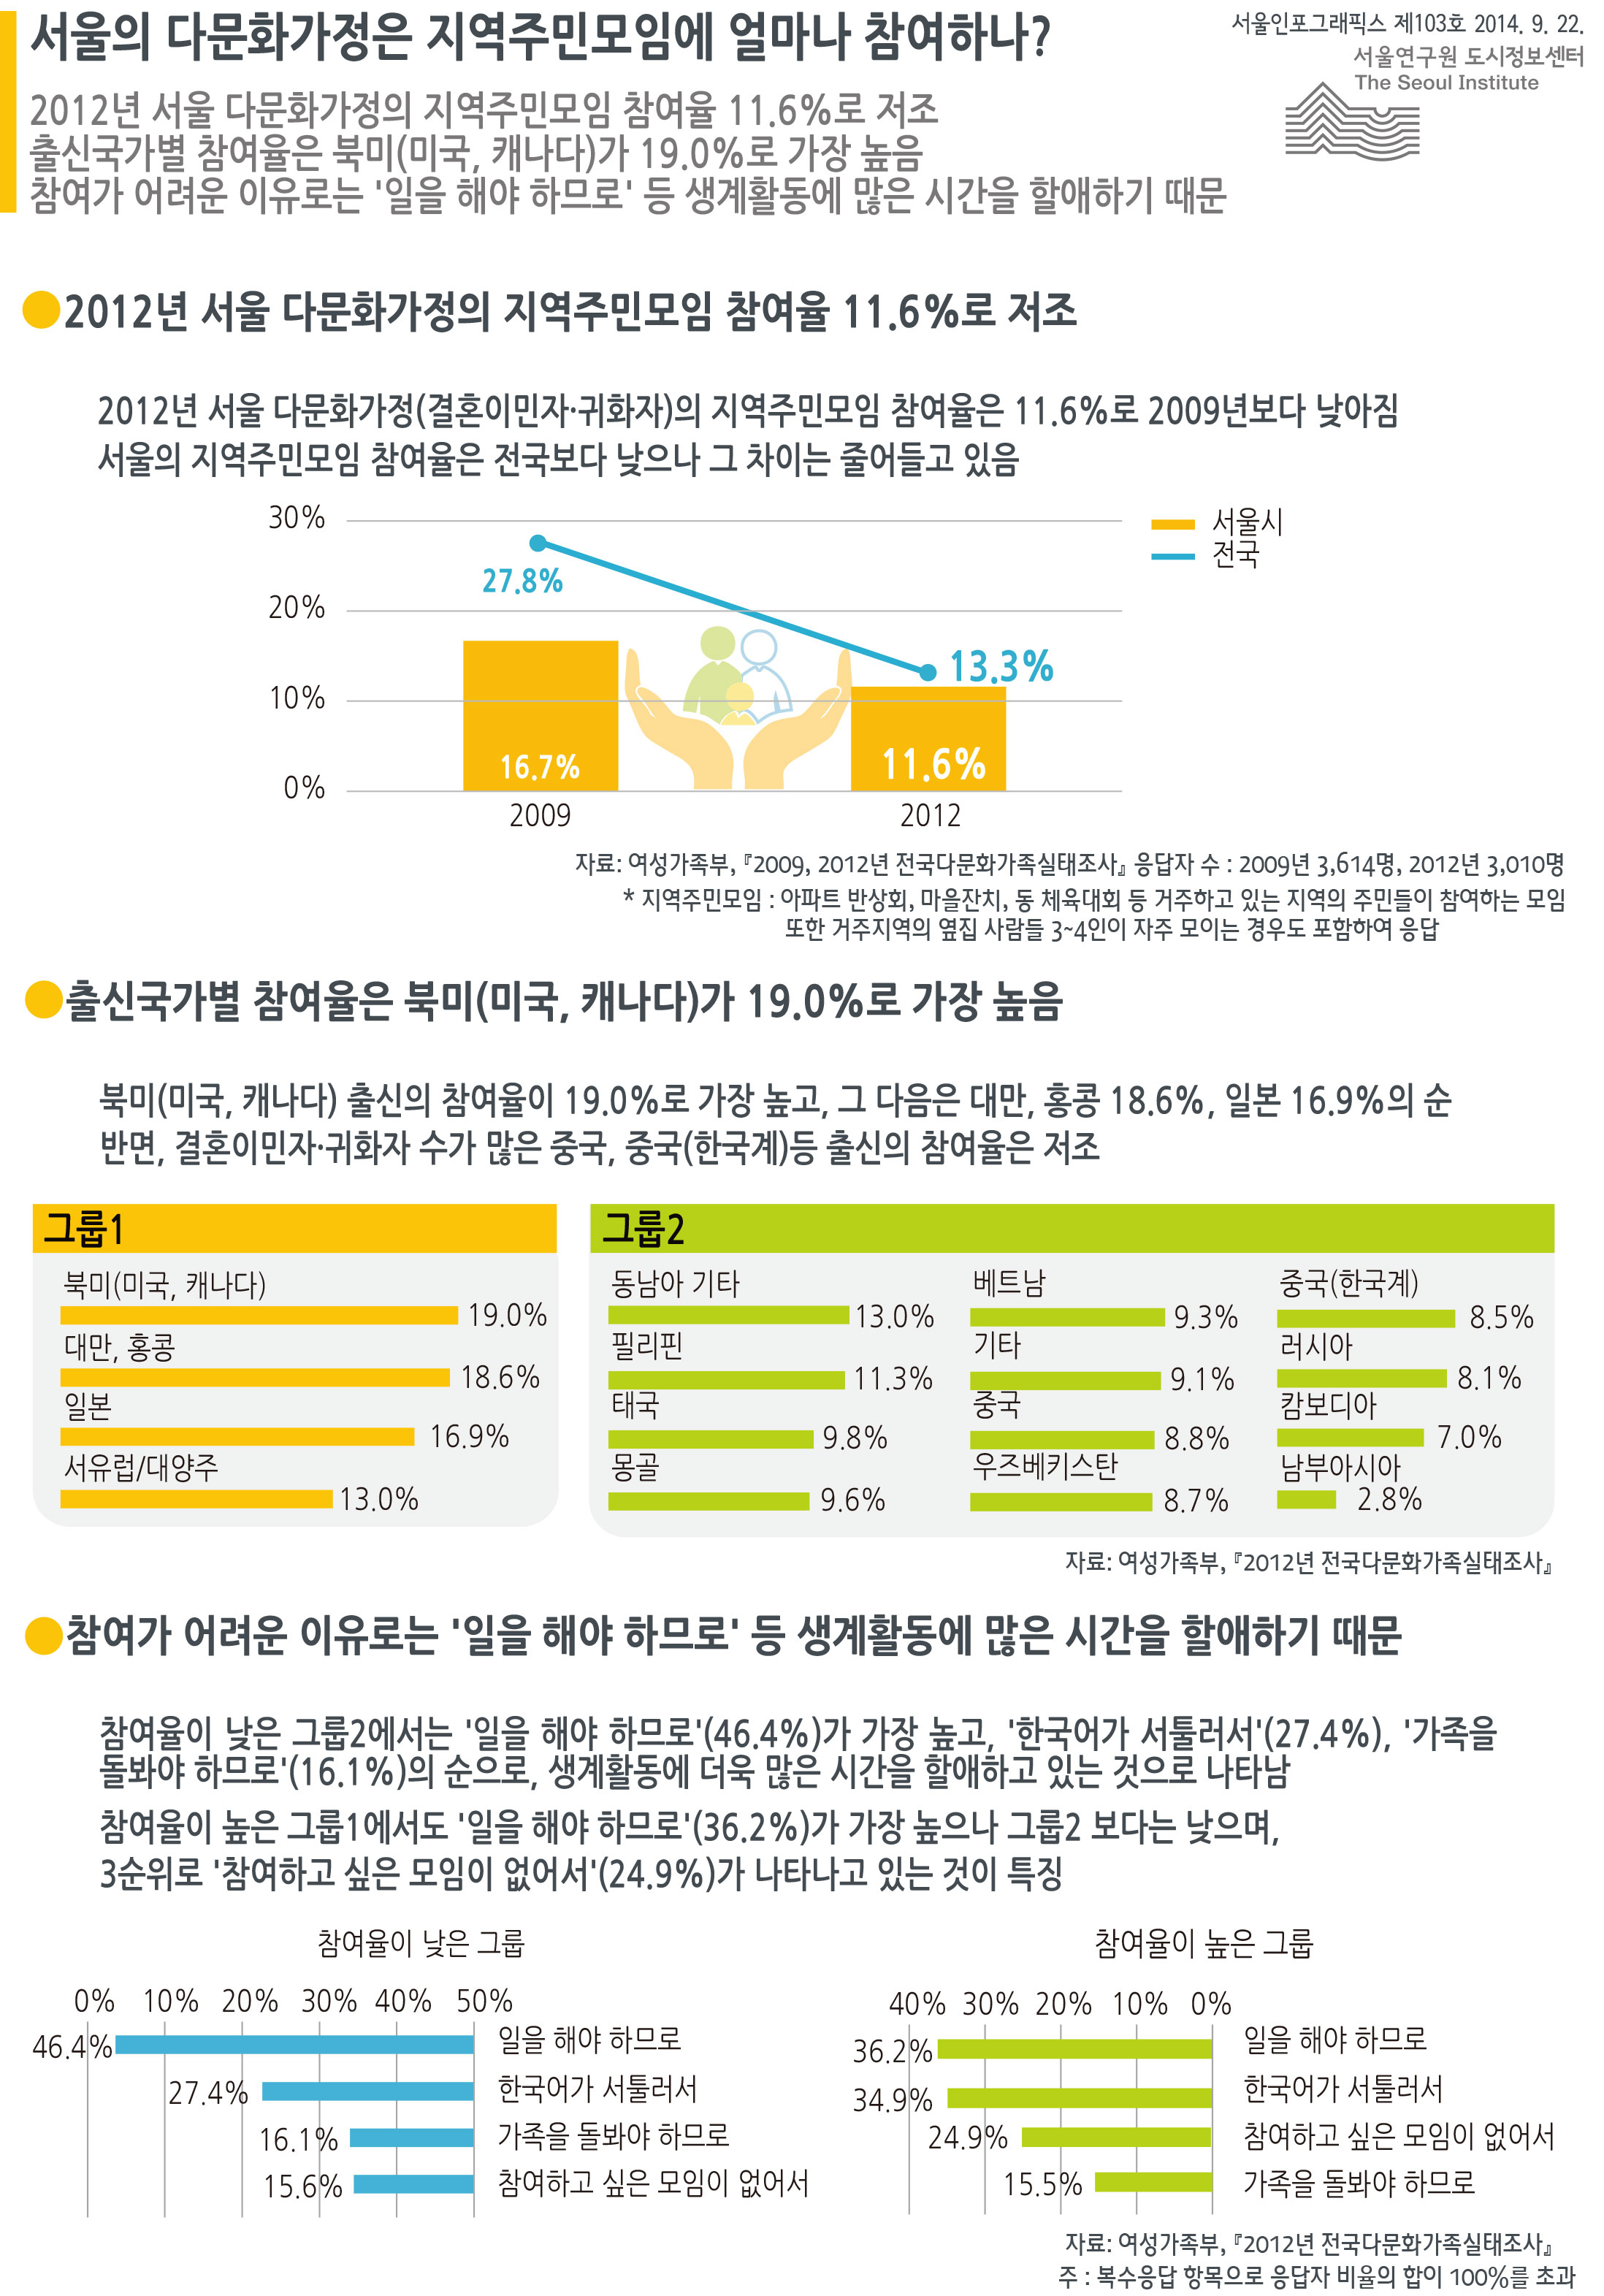 서울의 다문화가정은 지역주민모임에 얼마나 참여하나? 서울인포그래픽스 제103호 2014년 9월 22일 2012년 서울 다문화가정의 지역주민모임 참여율 11.6%로 저조 출신국가별 참여율은 북미(미국, 캐나다)가 19.0%로 가장 높음. 참여가 어려운 이유로는 ‘일을 해야 하므로’ 등 생계활동에 많은 시간을 할애하기 때문으로 정리될 수 있습니다. 인포그래픽으로 제공되는 그래픽은 하단에 표로 자세히 제공됩니다.